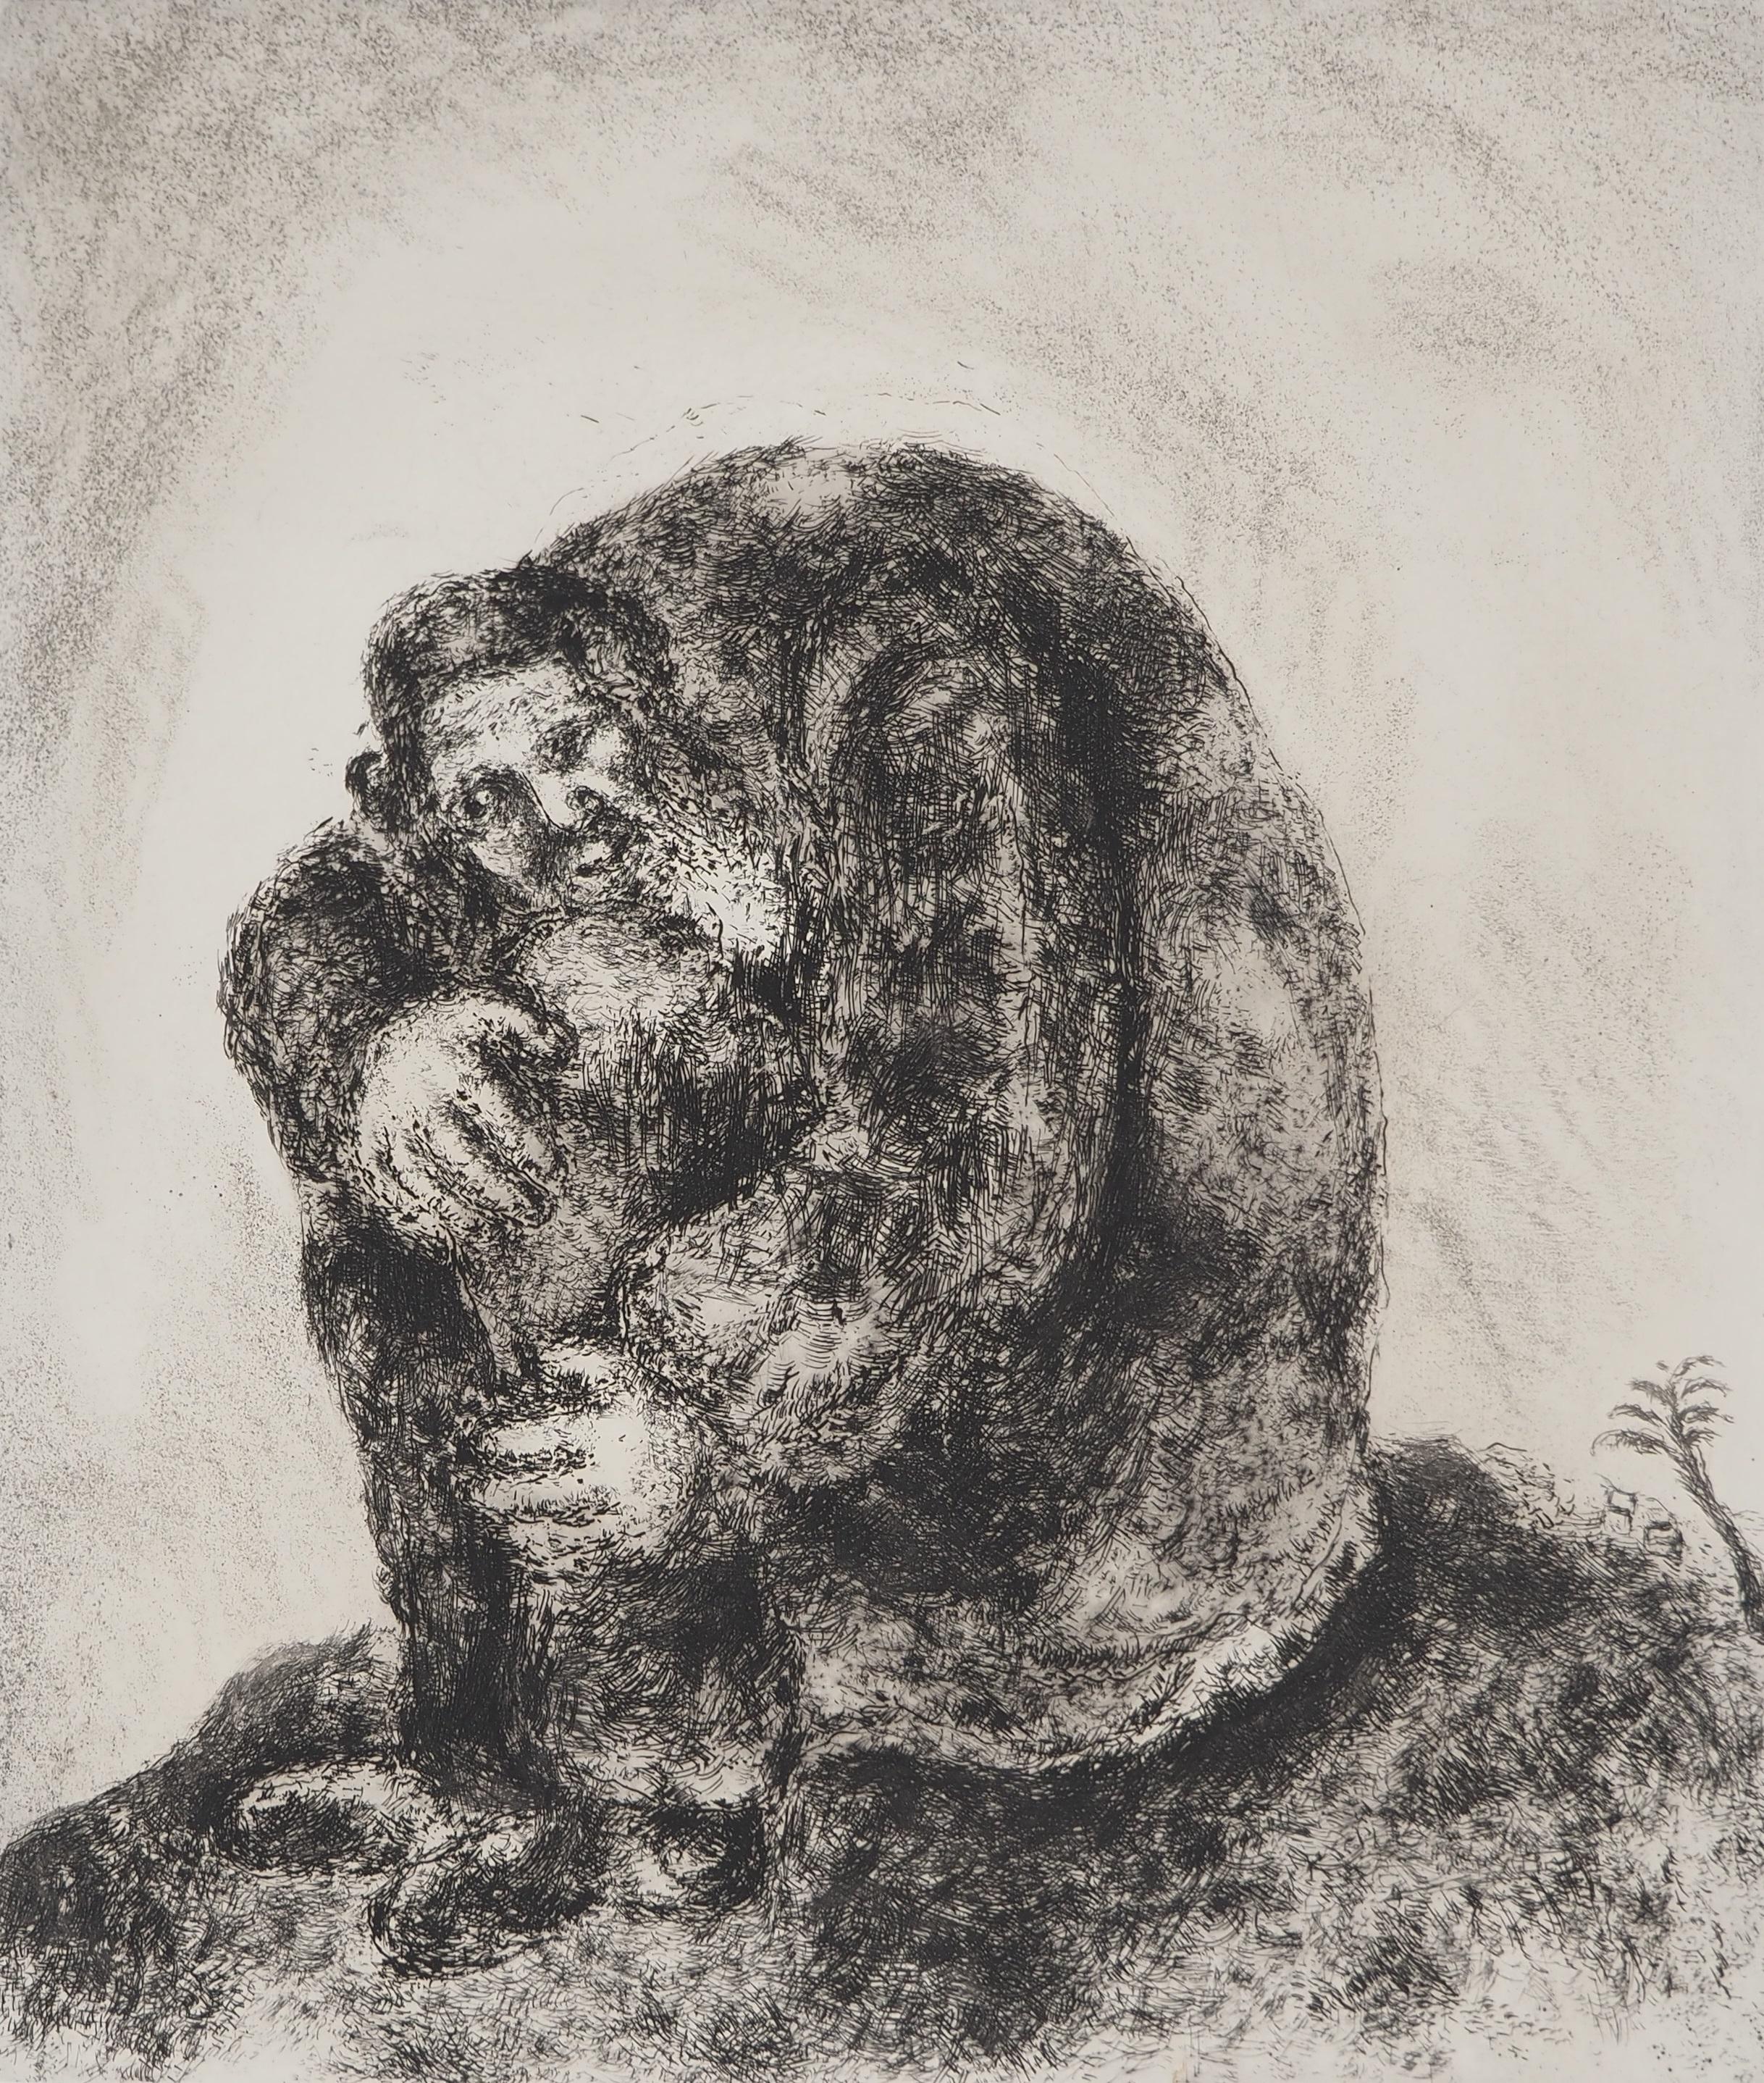 Marc Chagall (1887-1958)
Bible : Elie sur le mont Carmel, 1939

Gravure originale
Signature imprimée dans la plaque
Sur vélin de Montval, 44 x 33.5 cm (c. 17.3 x 13.1 inch)

INFORMATION : Publié par Vollard / Tériade en 1956

RÉFÉRENCE : Catalogue